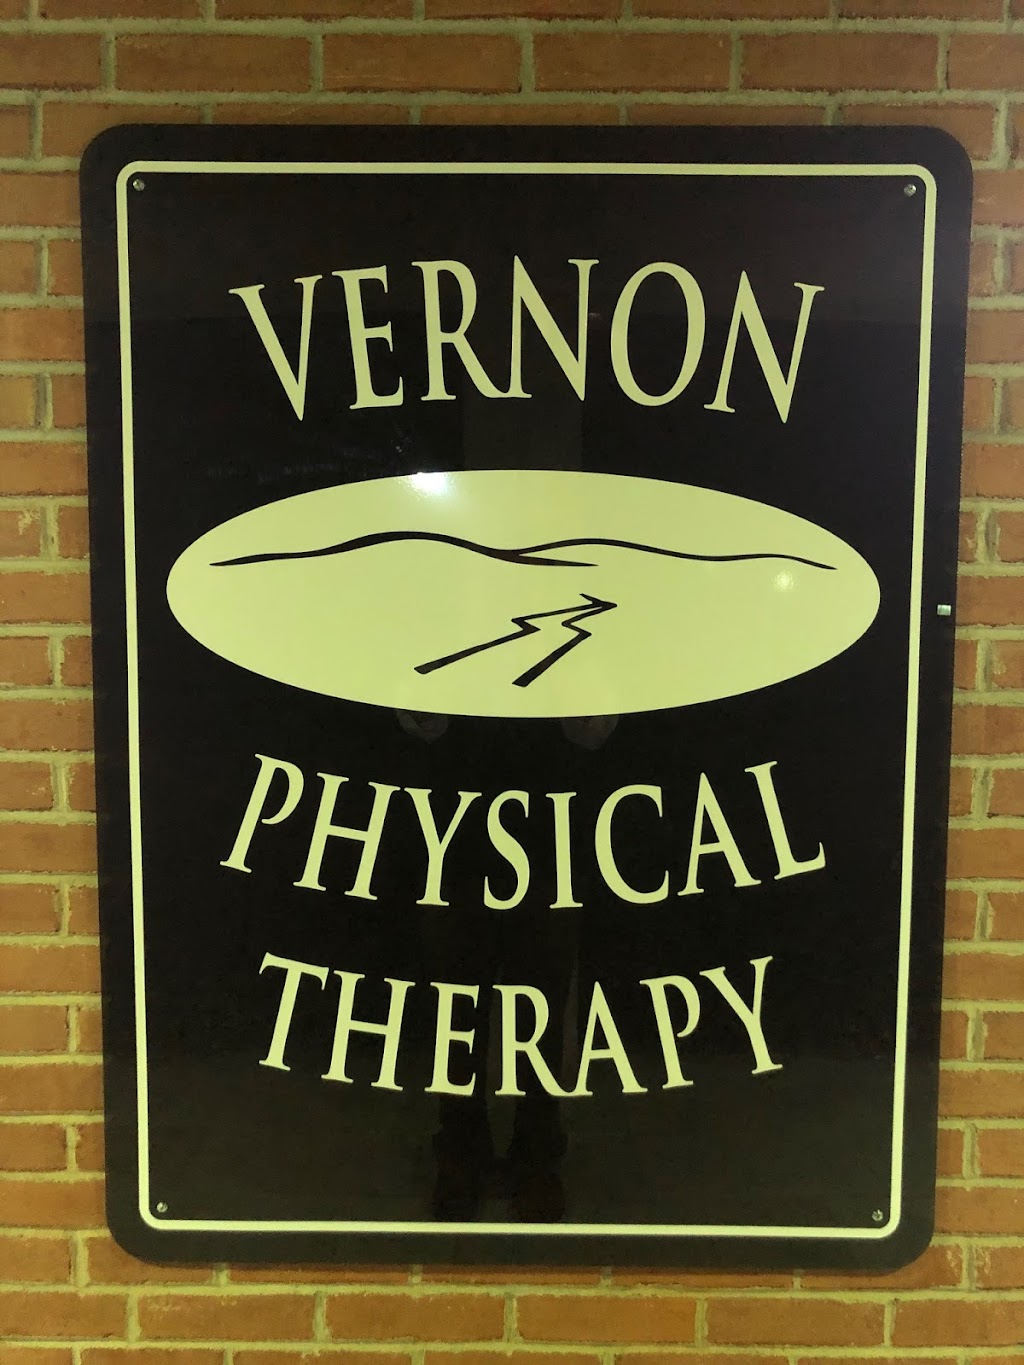 Vernon Physical Therapy | 529 Co Rd 515 #102, Vernon Township, NJ 07462 | Phone: (973) 764-5333